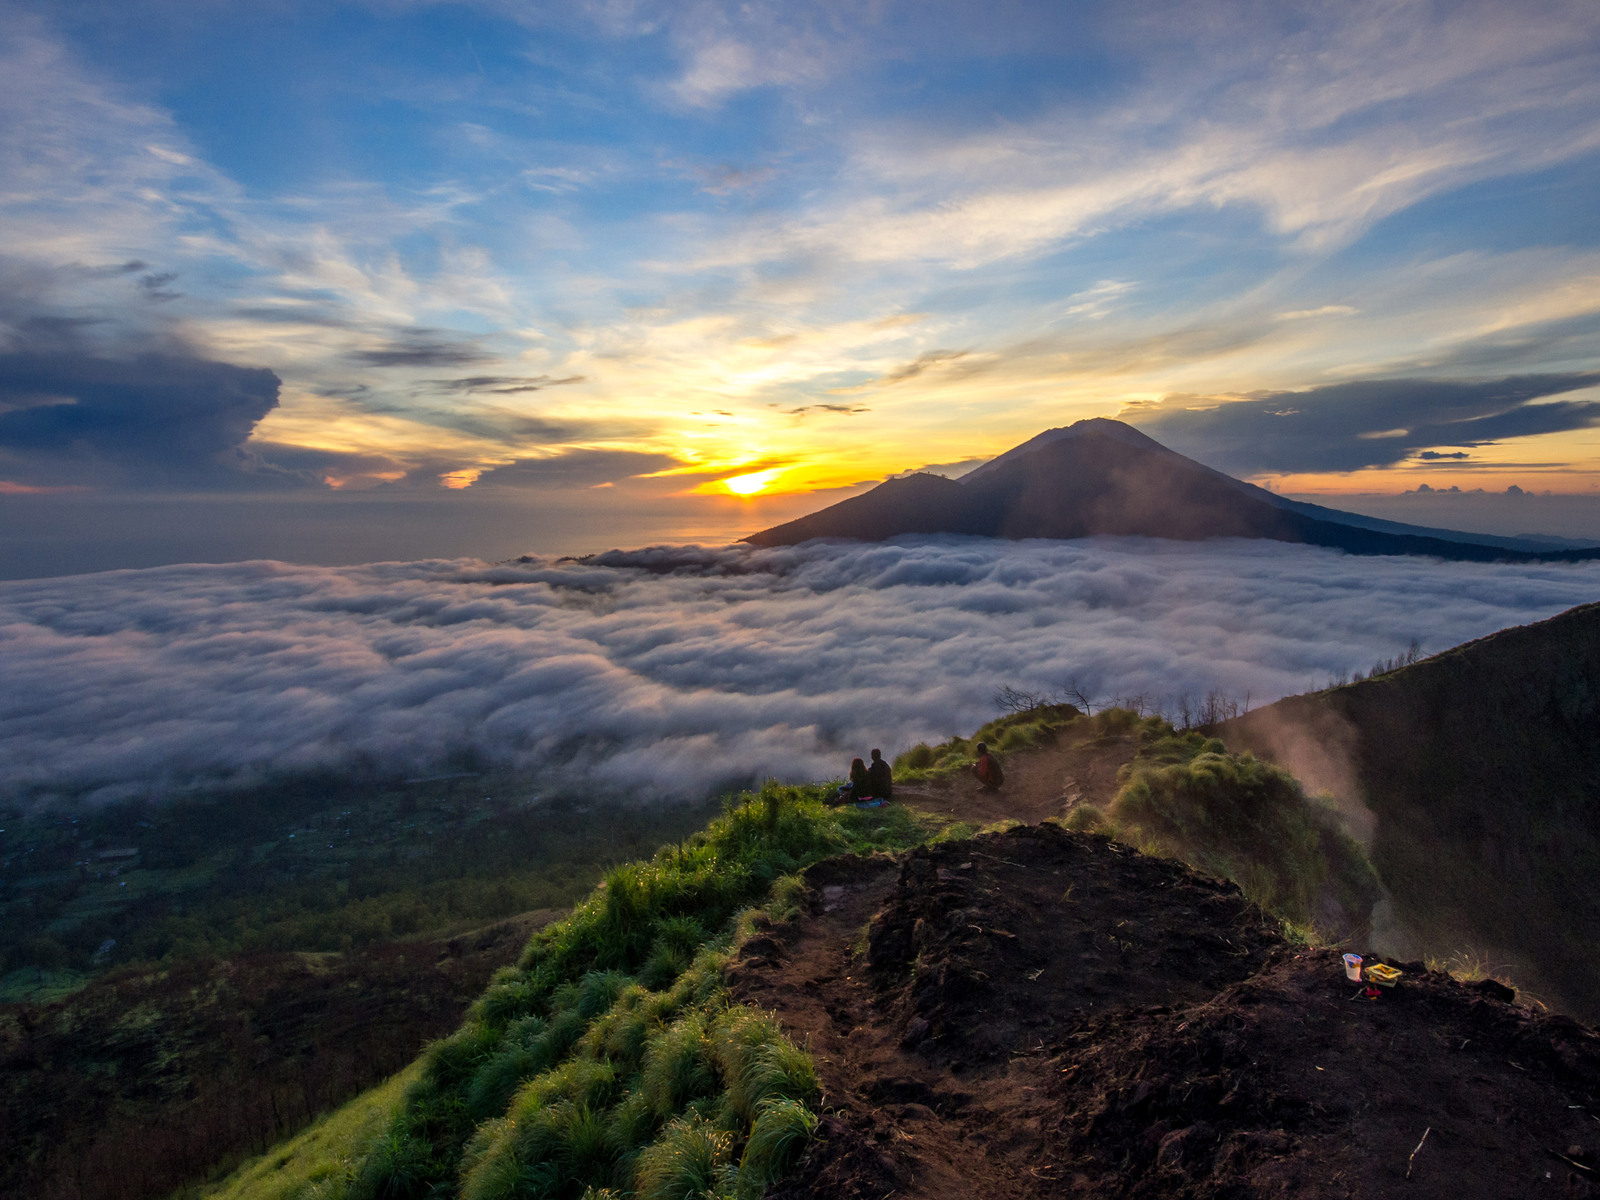 Thận chí còn có thể thấy được mây, đỉnh núi Batur là địa điểm thu hút rất nhiều du khách